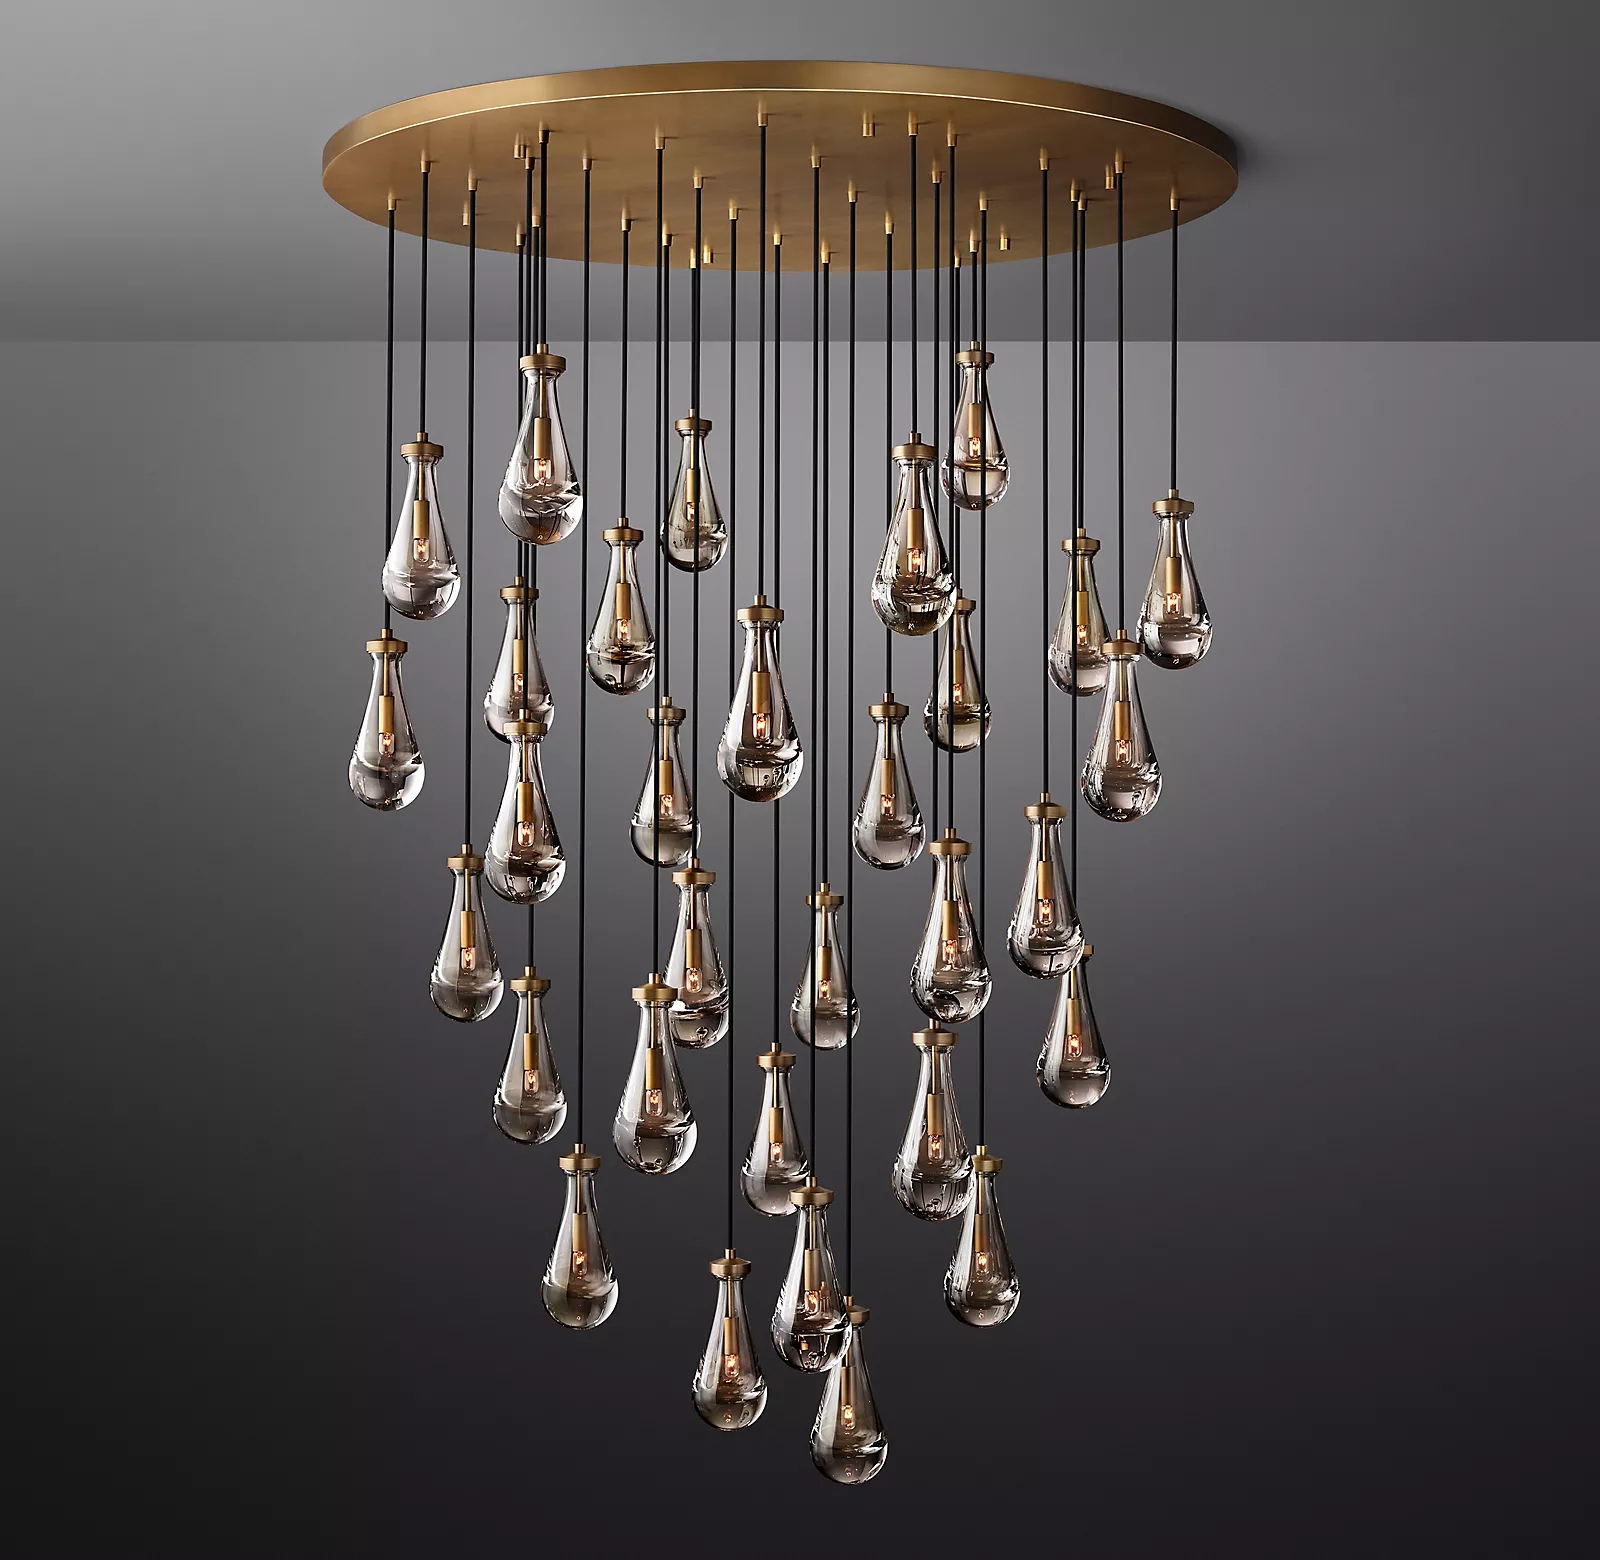 New rain round chandelier 60 inches